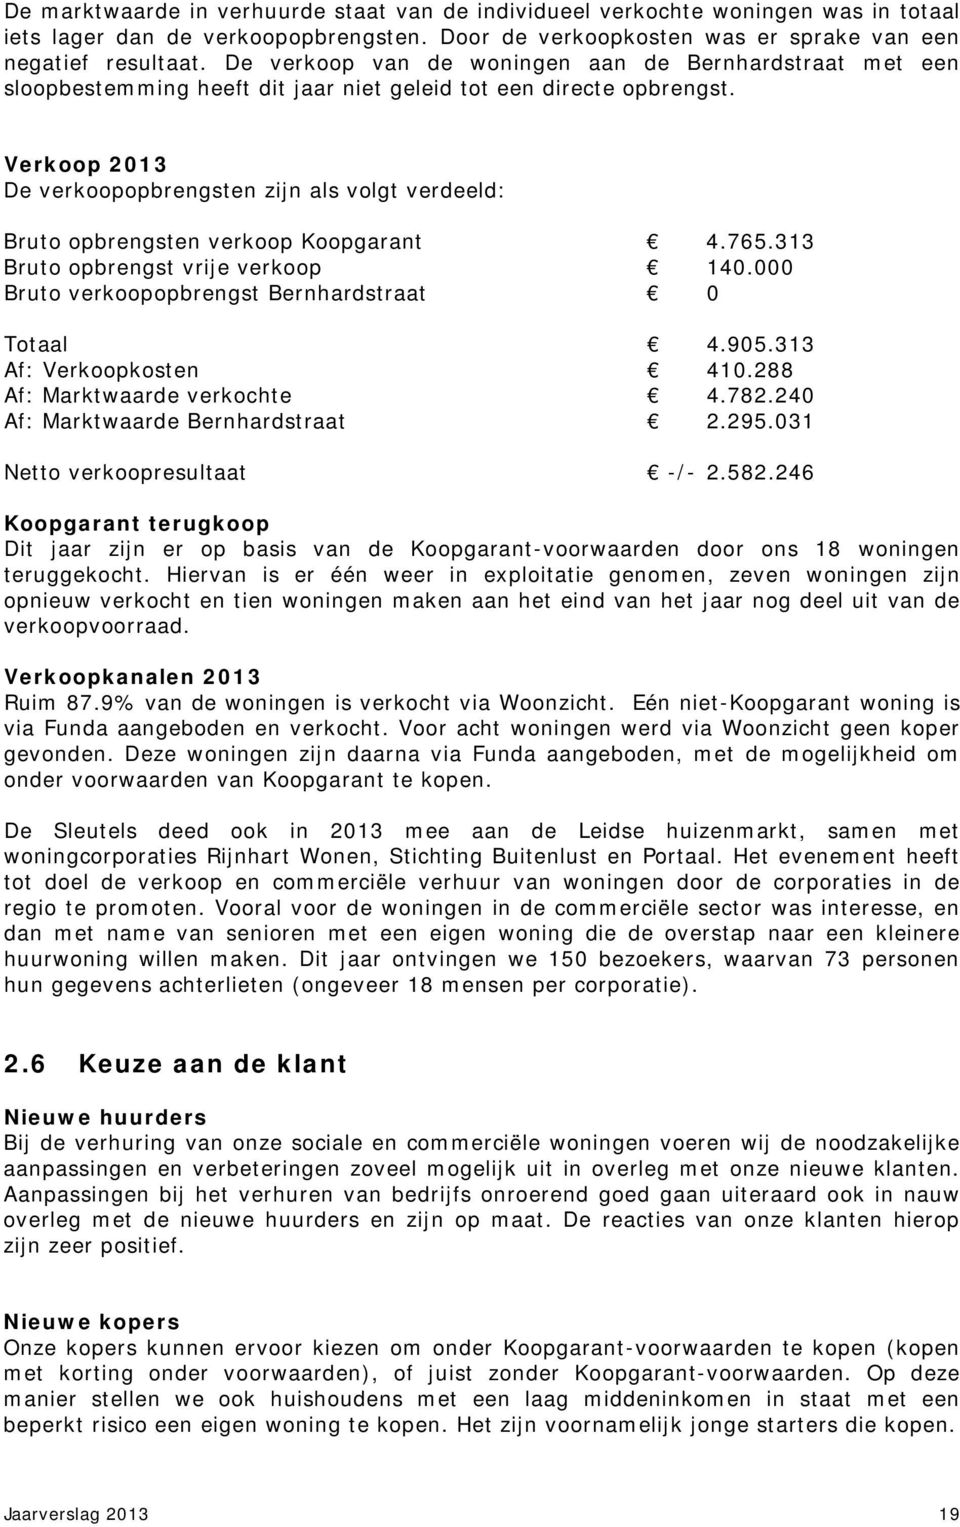 Verkoop 2013 De verkoopopbrengsten zijn als volgt verdeeld: Bruto opbrengsten verkoop Koopgarant 4.765.313 Bruto opbrengst vrije verkoop 140.000 Bruto verkoopopbrengst Bernhardstraat 0 Totaal 4.905.